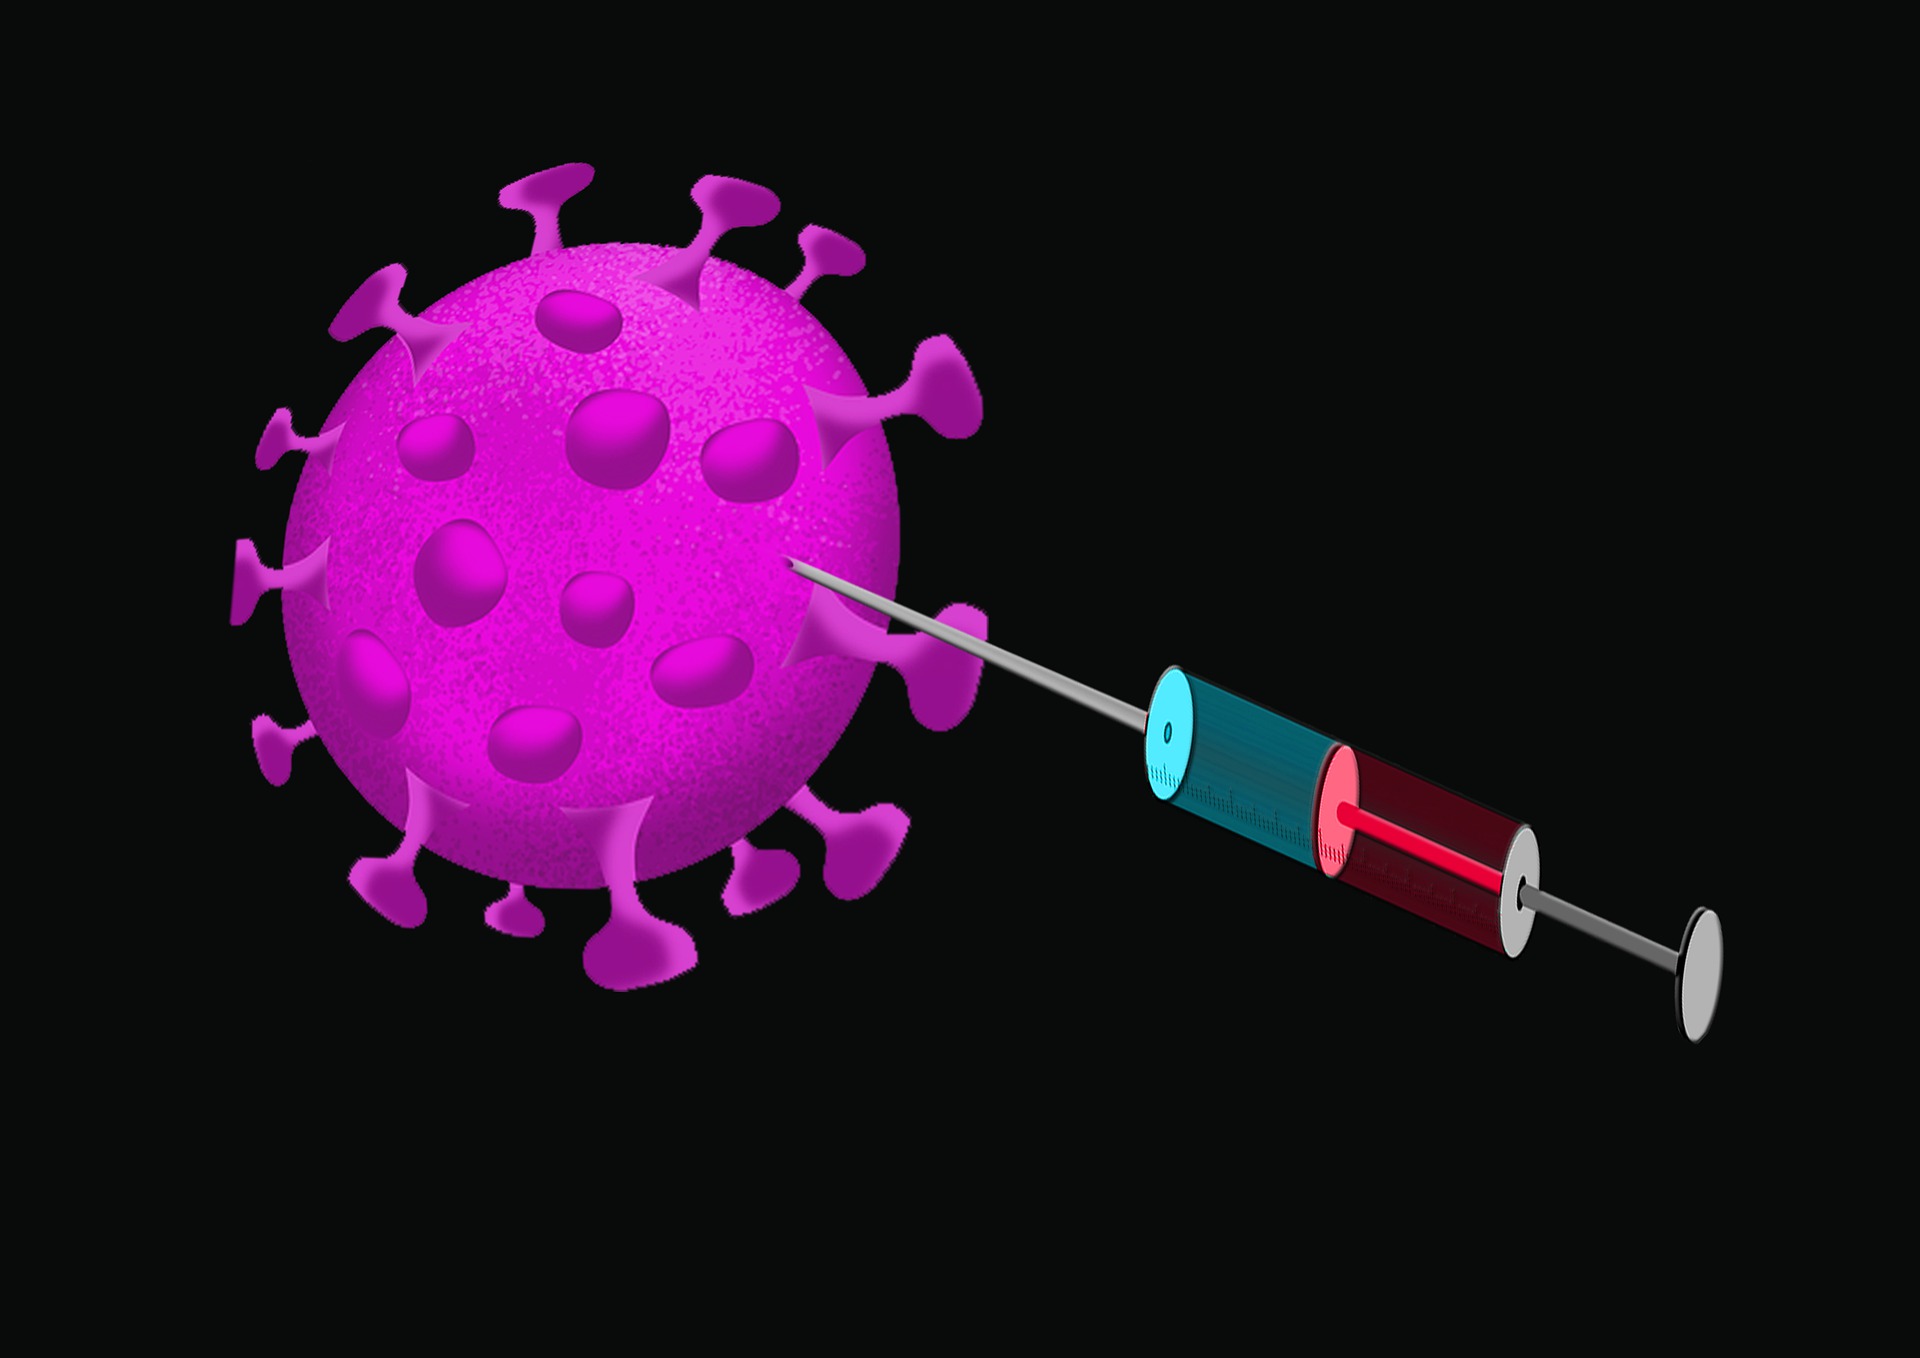 Virus vaccine. Вирусы и прививки. Ковид вакцинация вирус. Вакцина от короны вируса.